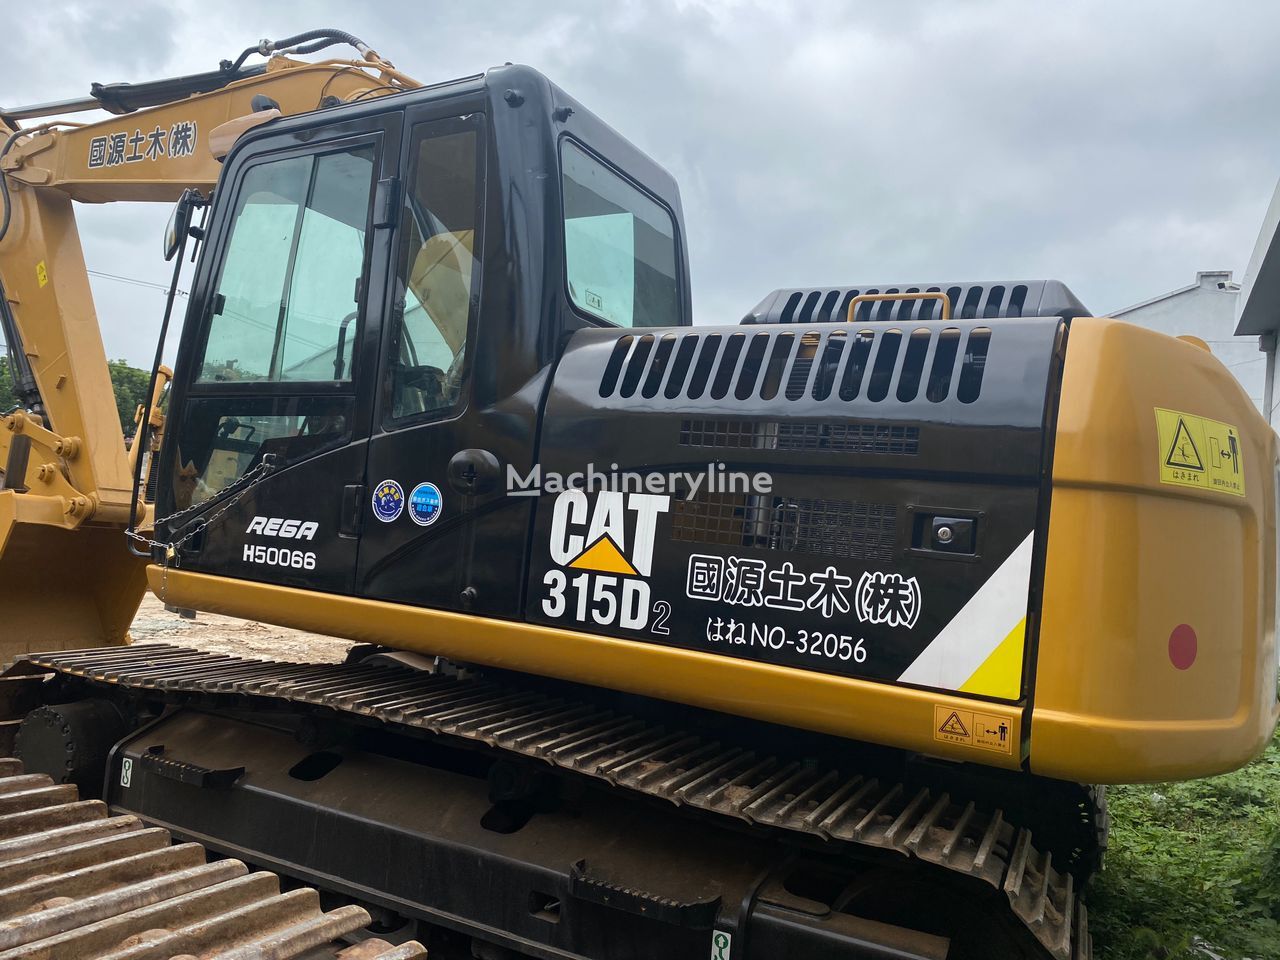 CAT 315 tracked excavator